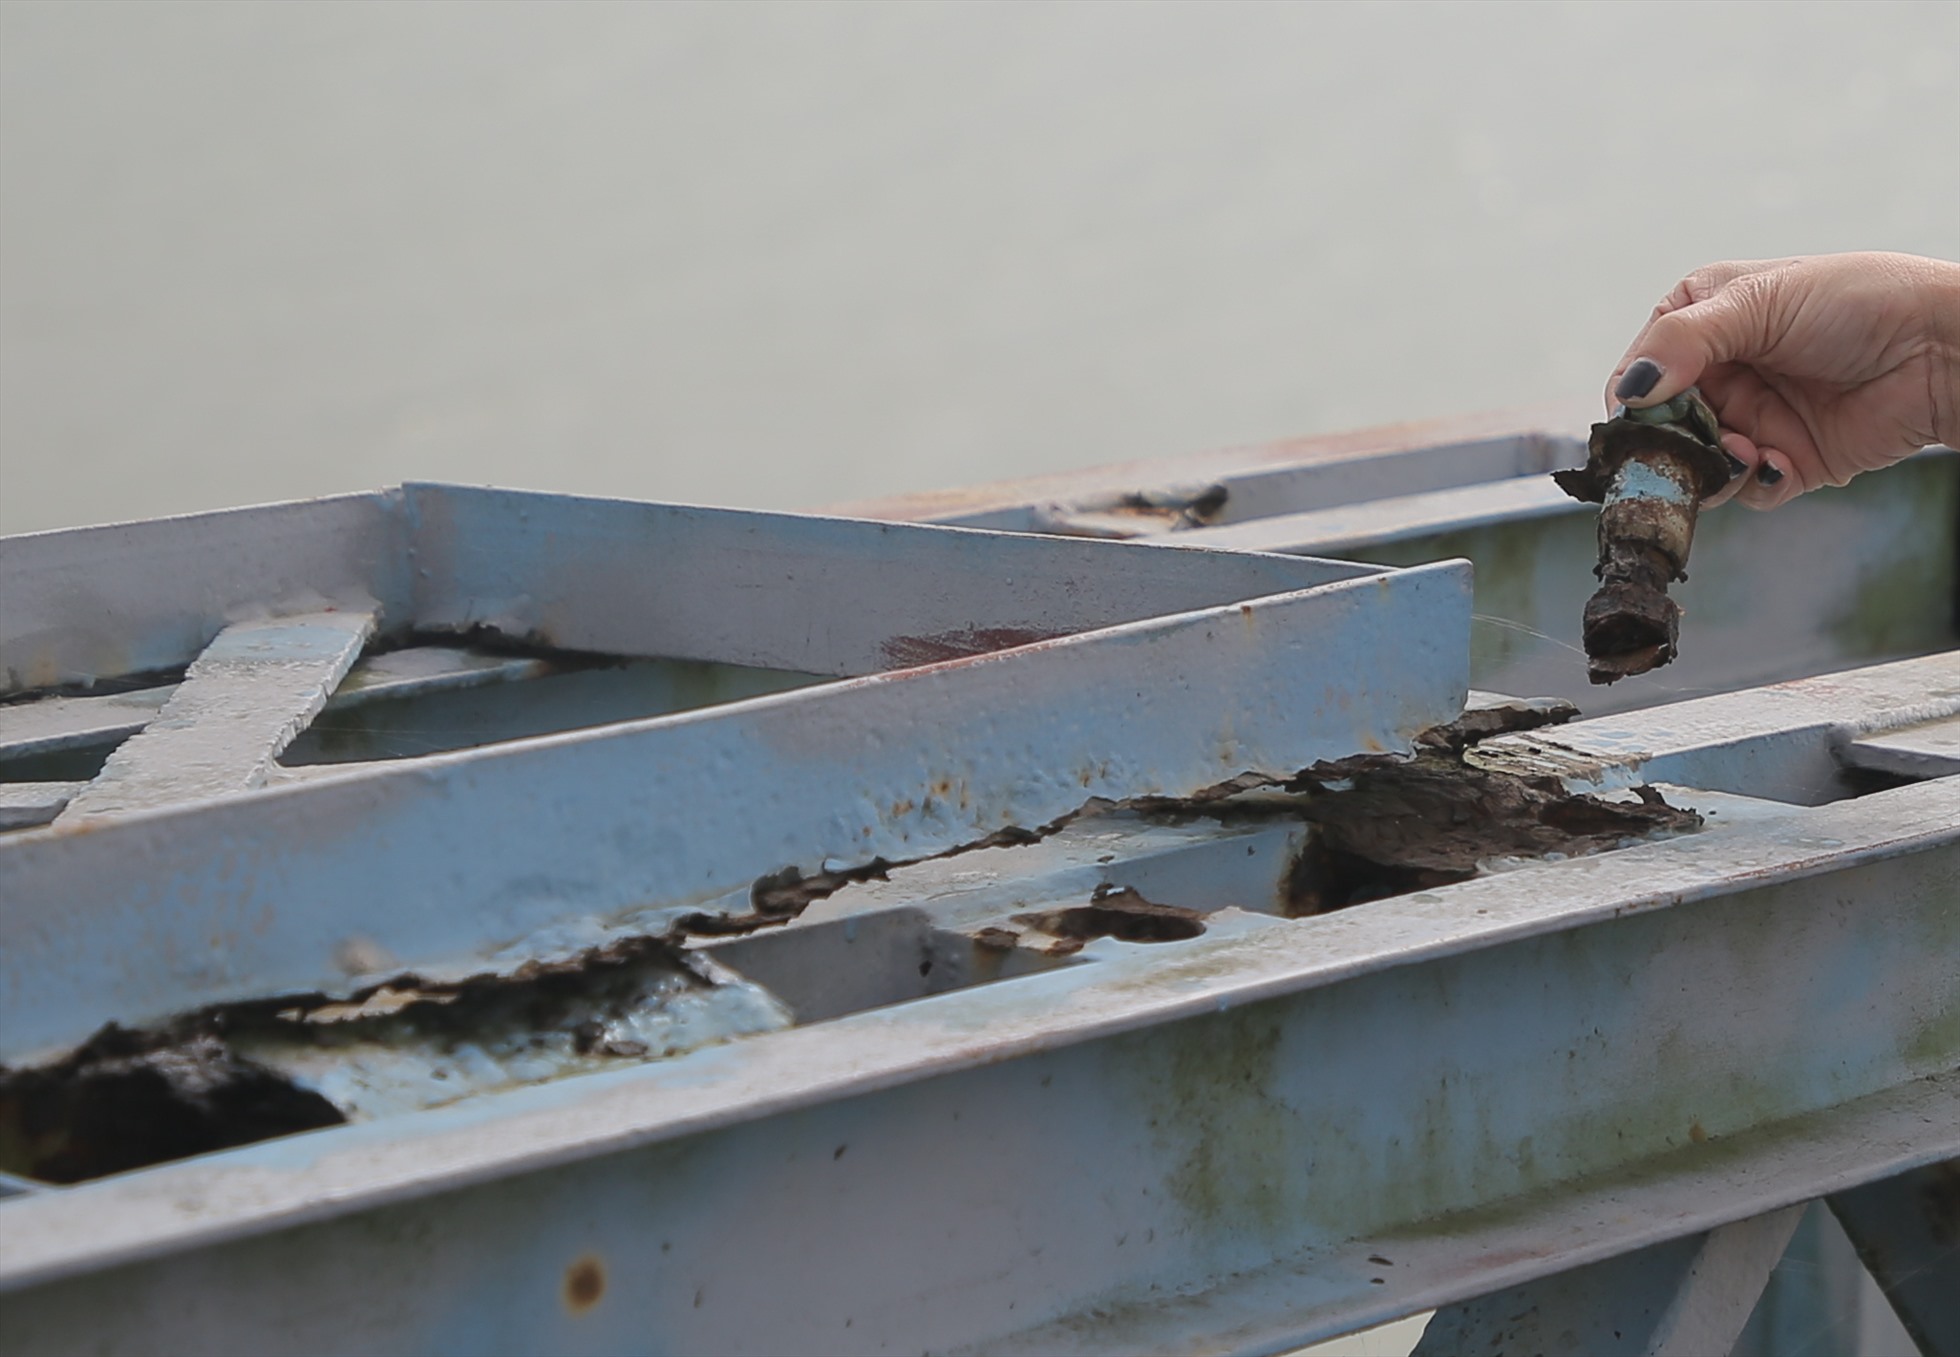 Thanh sắt ở điểm đấu nối trên thành cầu bị gỉ sét đến độ ốc vít thành đồ bỏ đi.